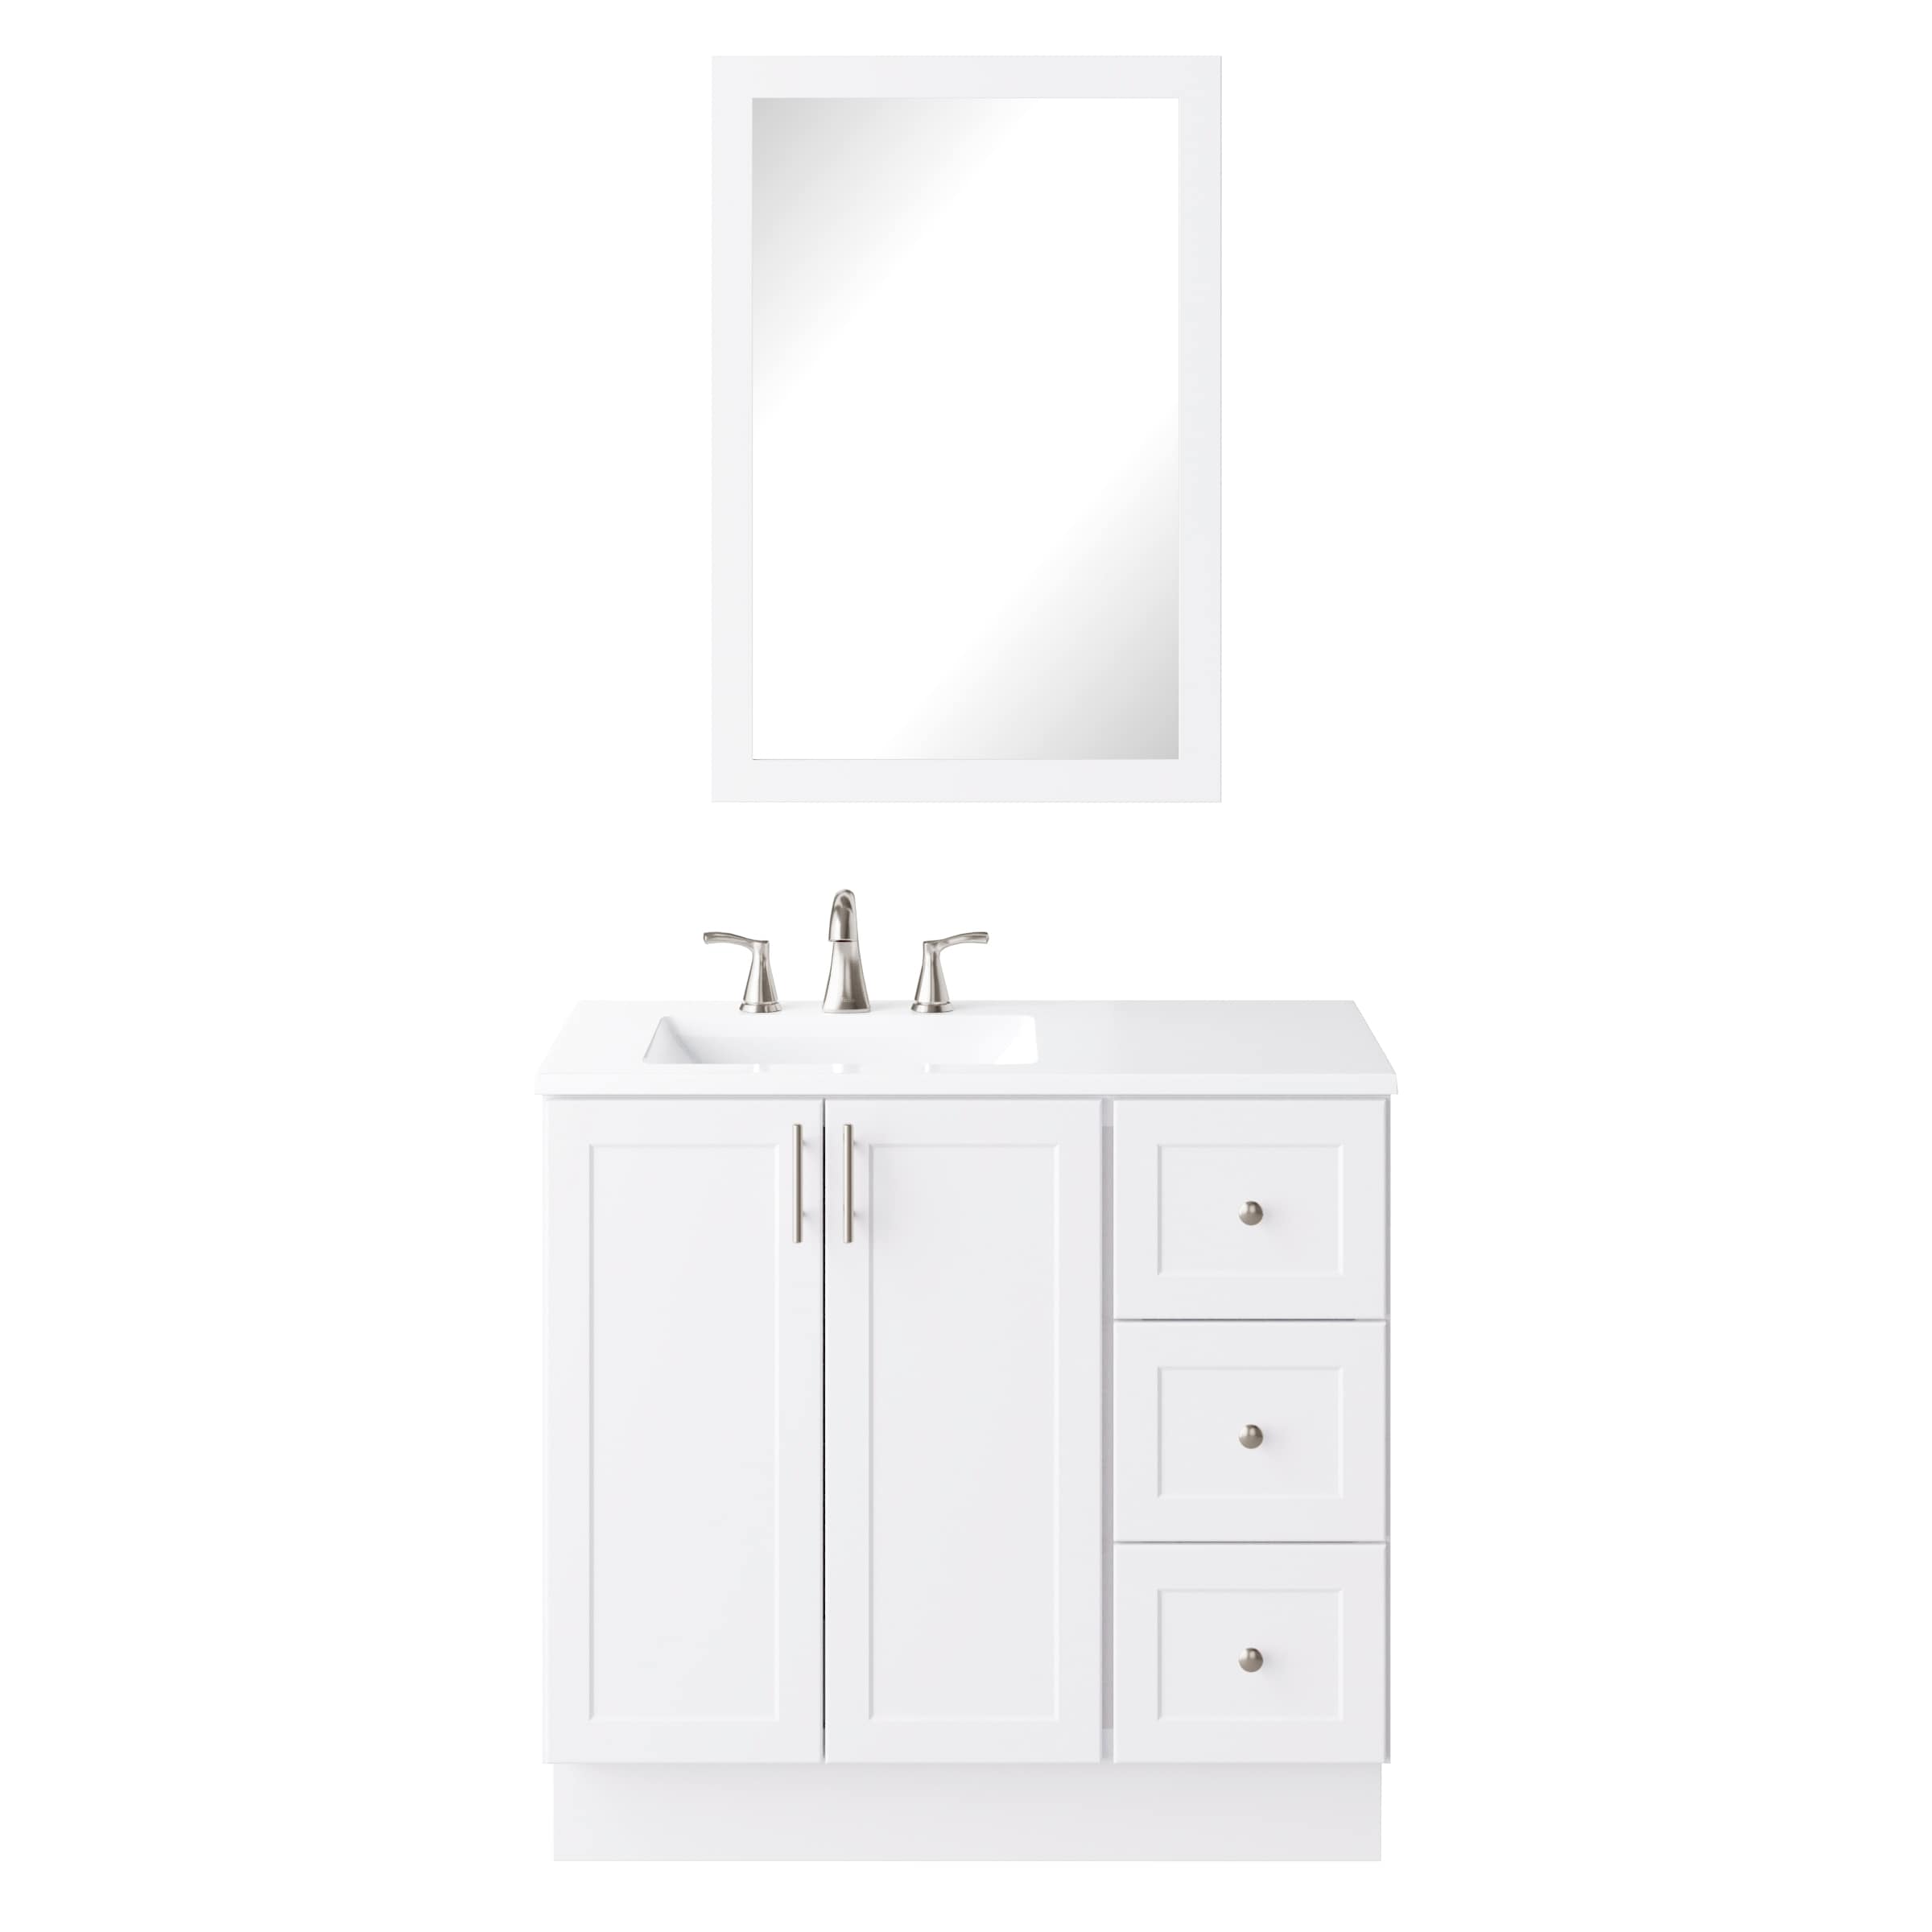 White Single Sink Bathroom Vanity With, 47 Inch Wide Bathroom Vanity Top